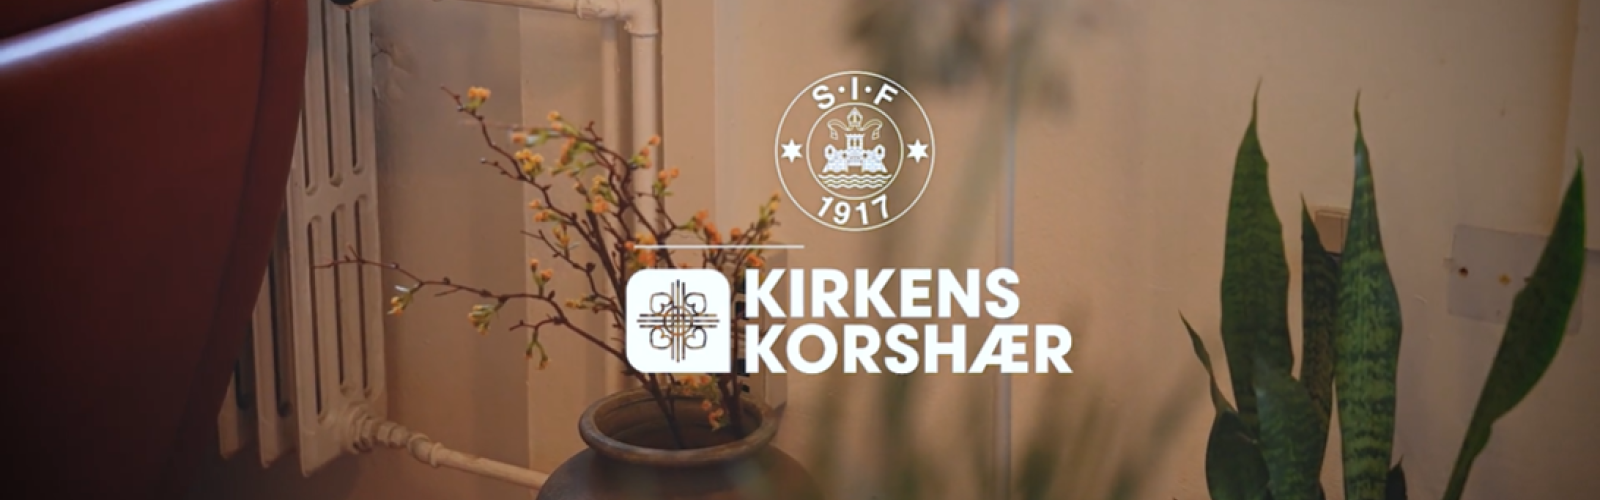 I samarbejde med Jysk har spillerne fra Silkeborg IF givet Kirkens Korshærs varmestue i Silkeborg en makeover